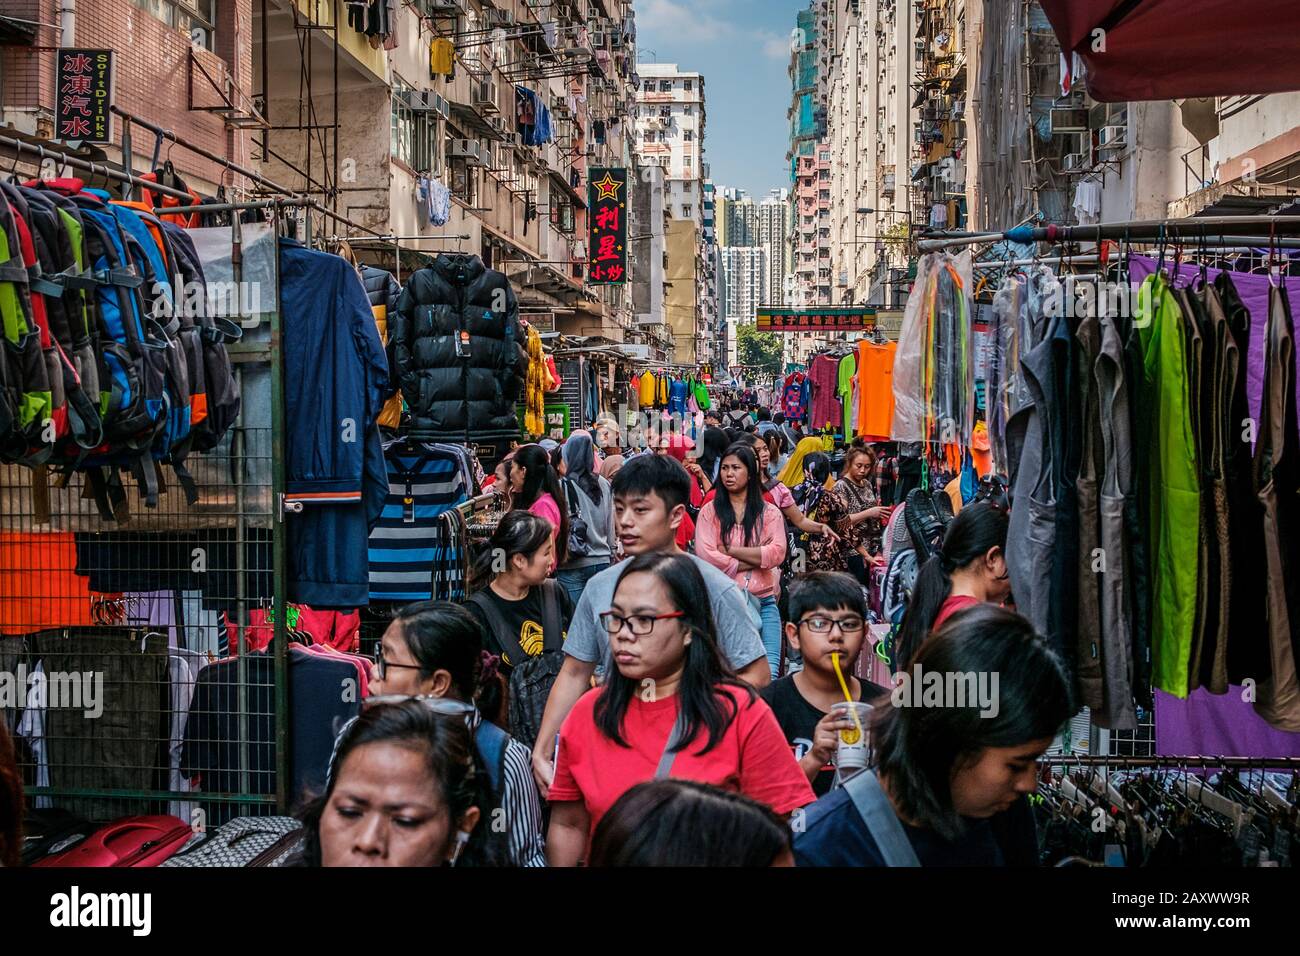 Hong Kong, novembre 2019 : des gens dans une rue bondée à Hong Kong, en Chine Banque D'Images